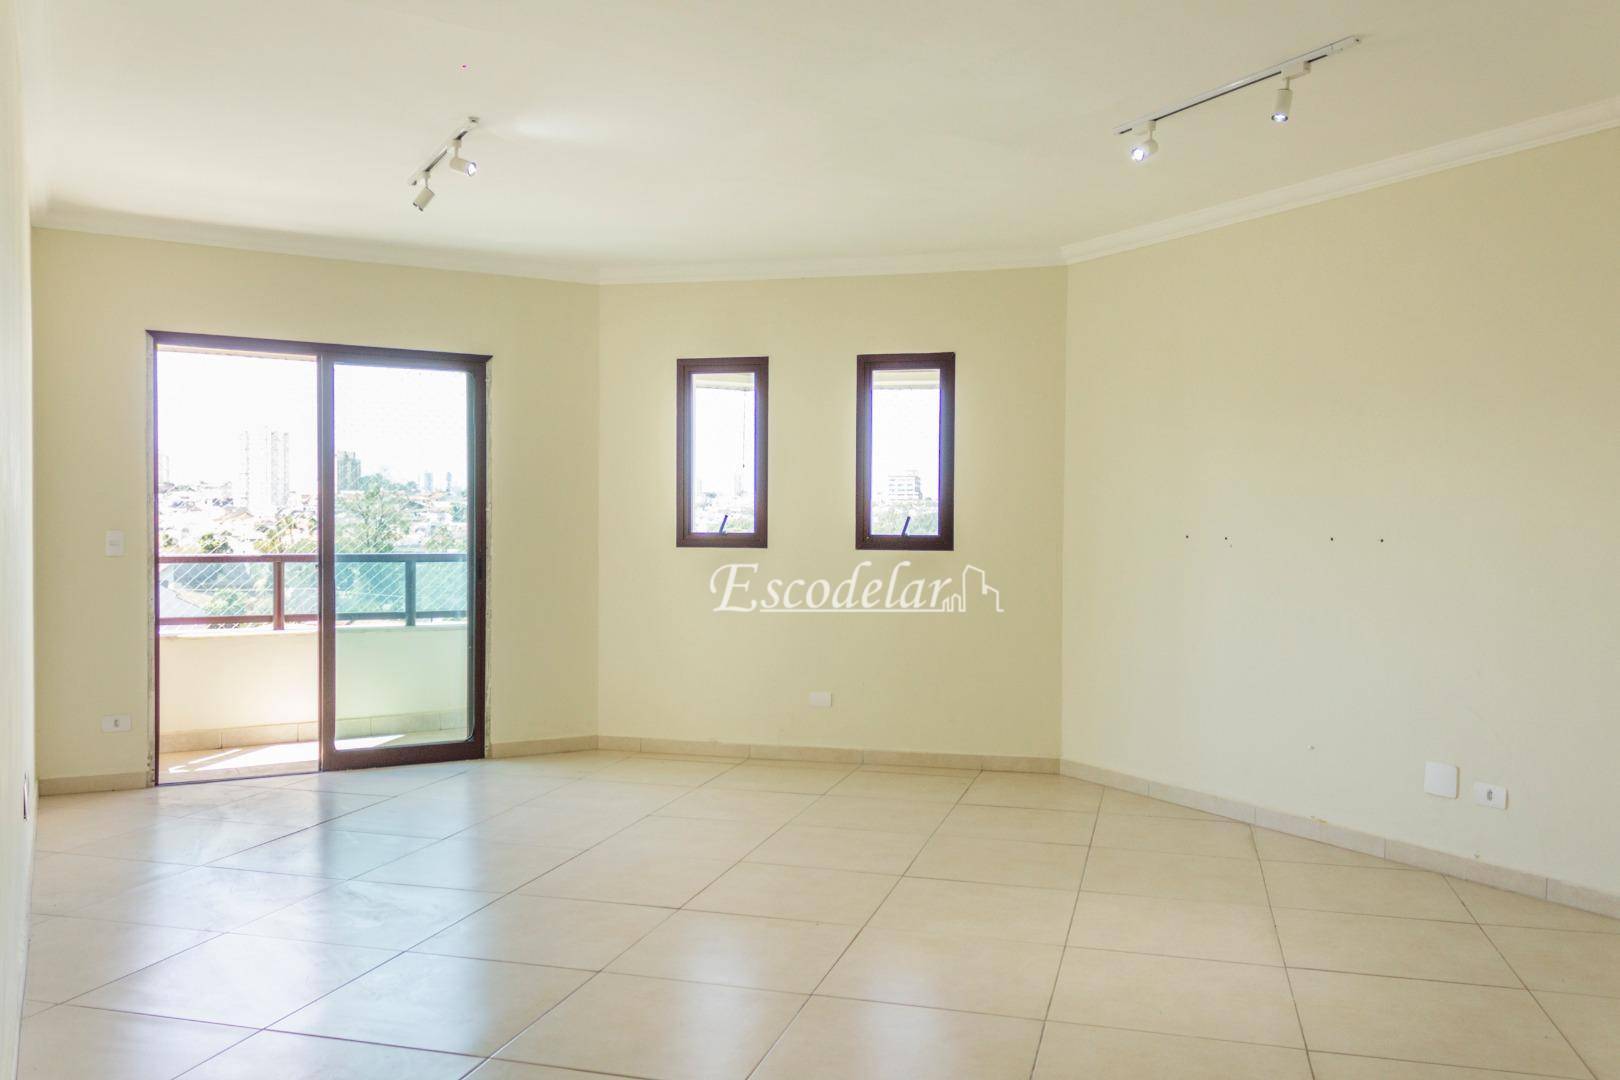 Apartamento à venda, 170 m² por R$ 850.000,00 - Vila Galvão - Guarulhos/SP